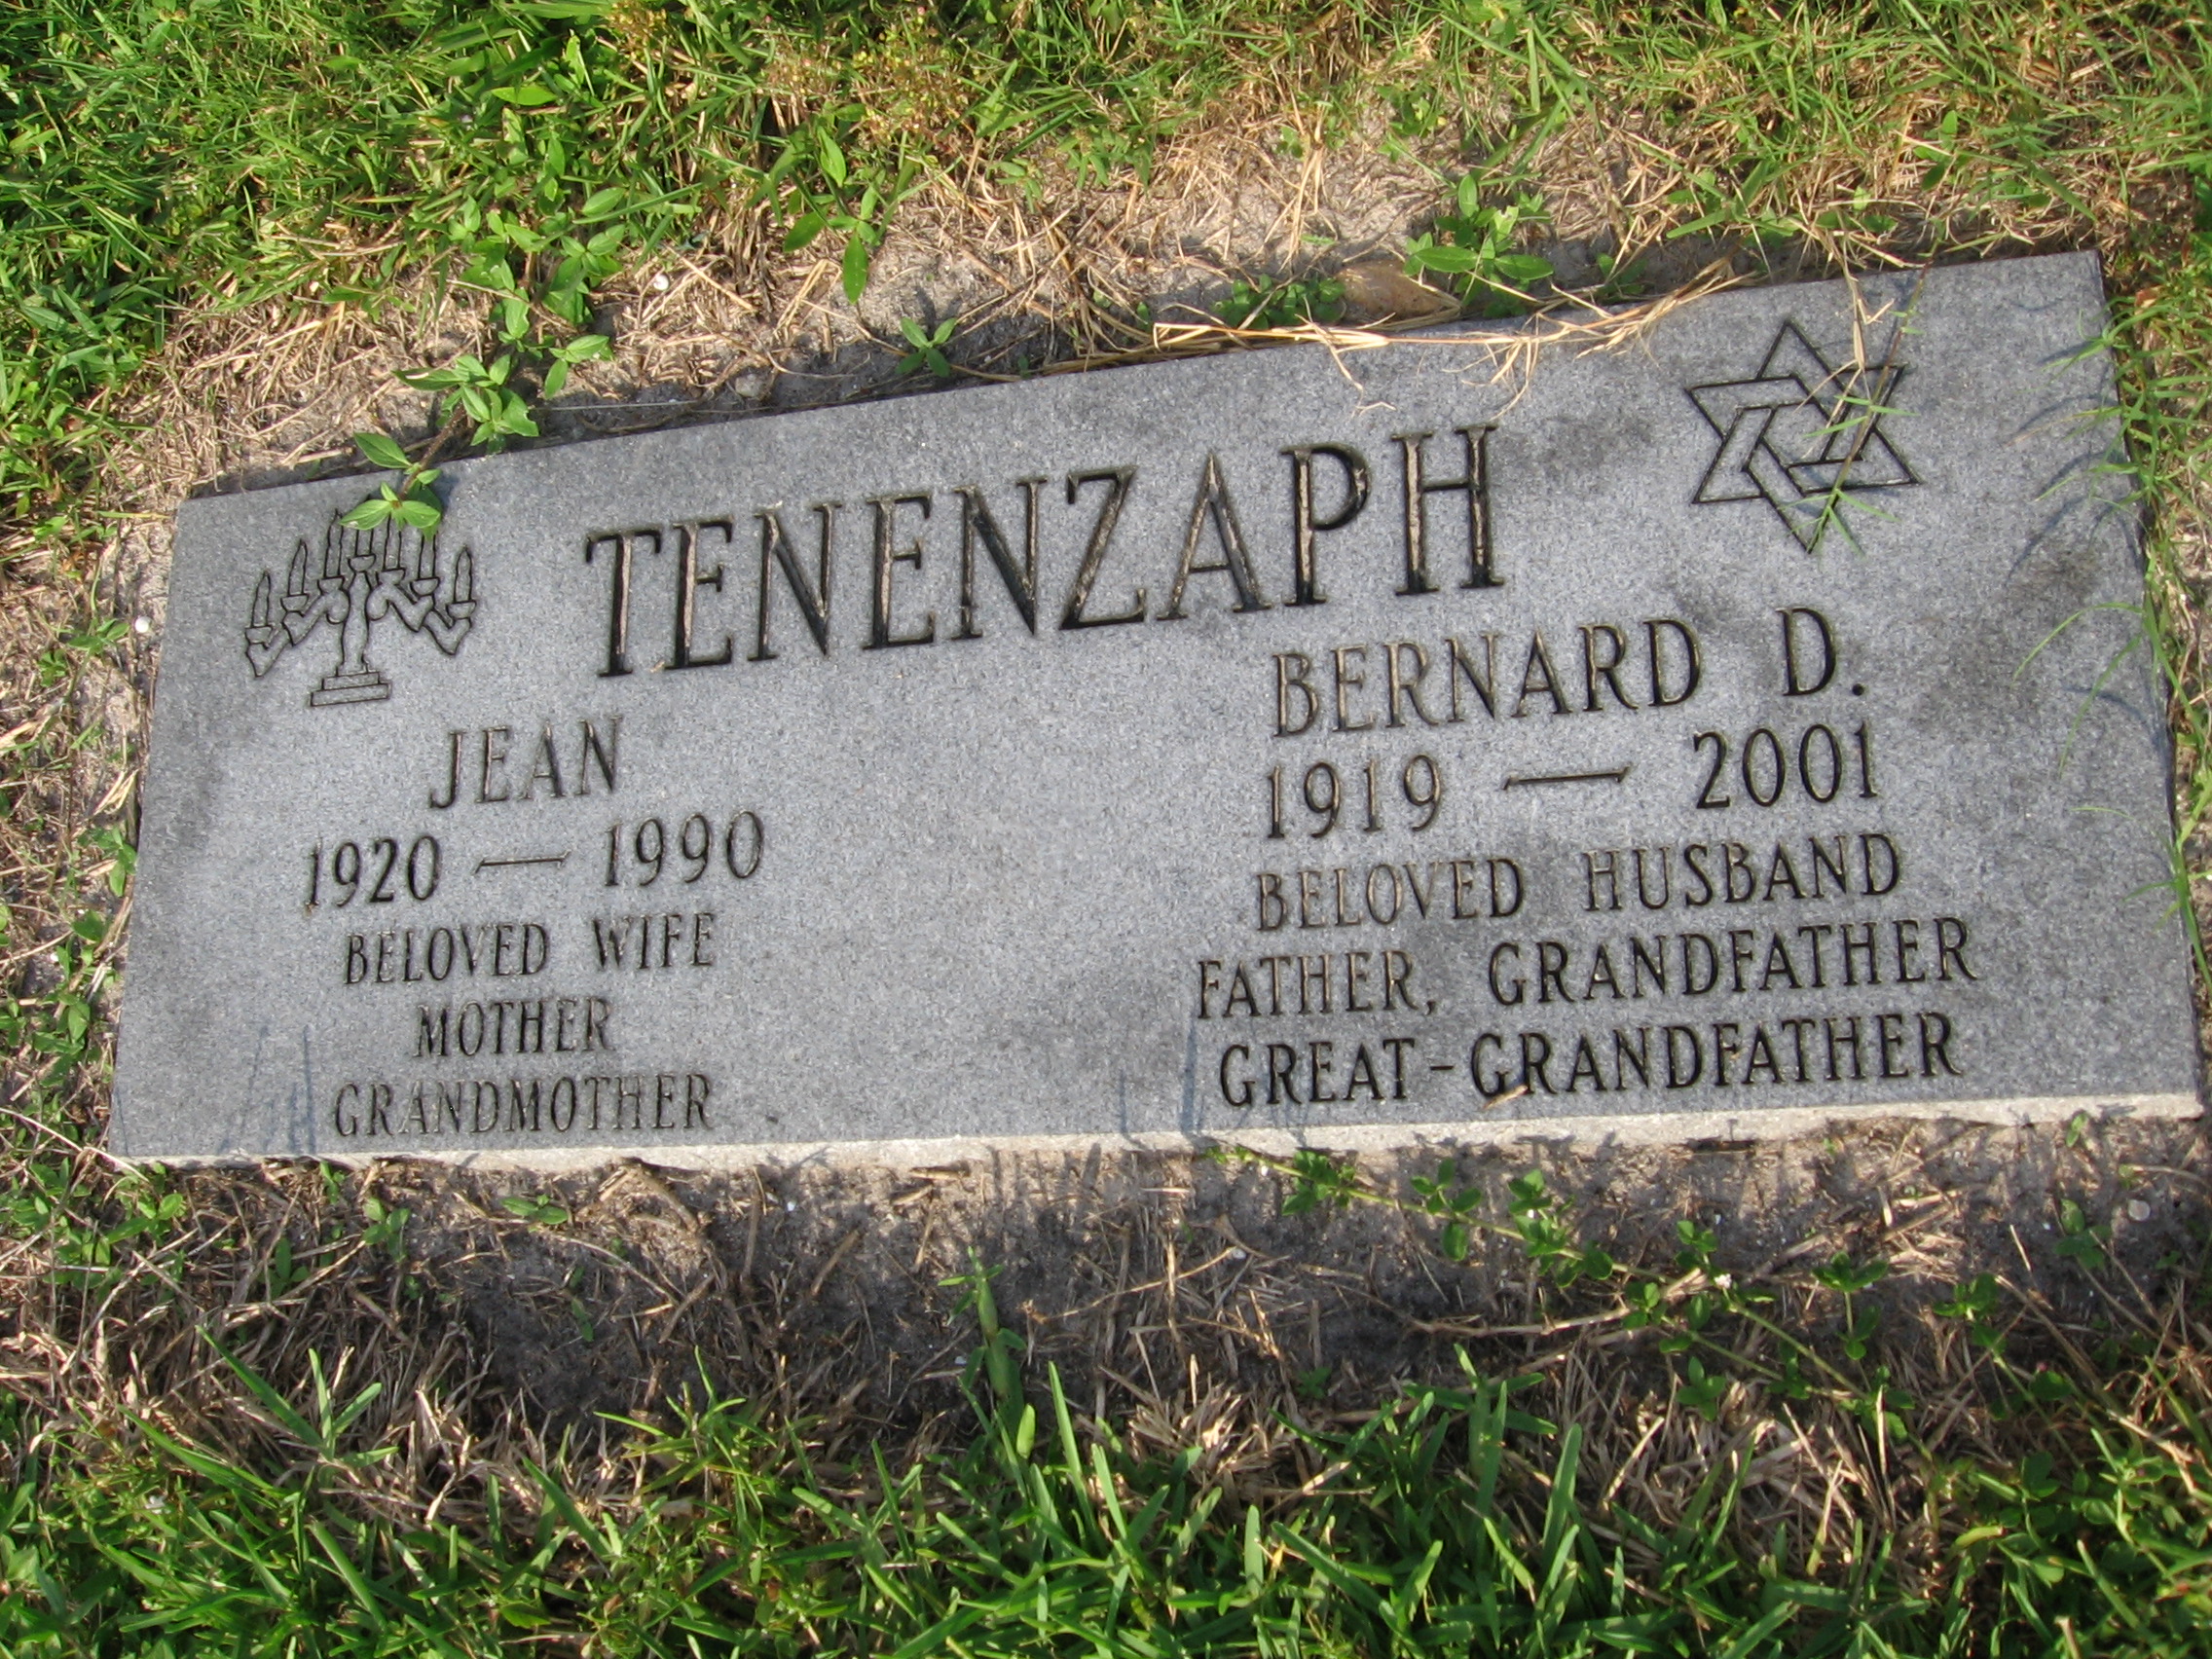 Bernard D Tenenzaph